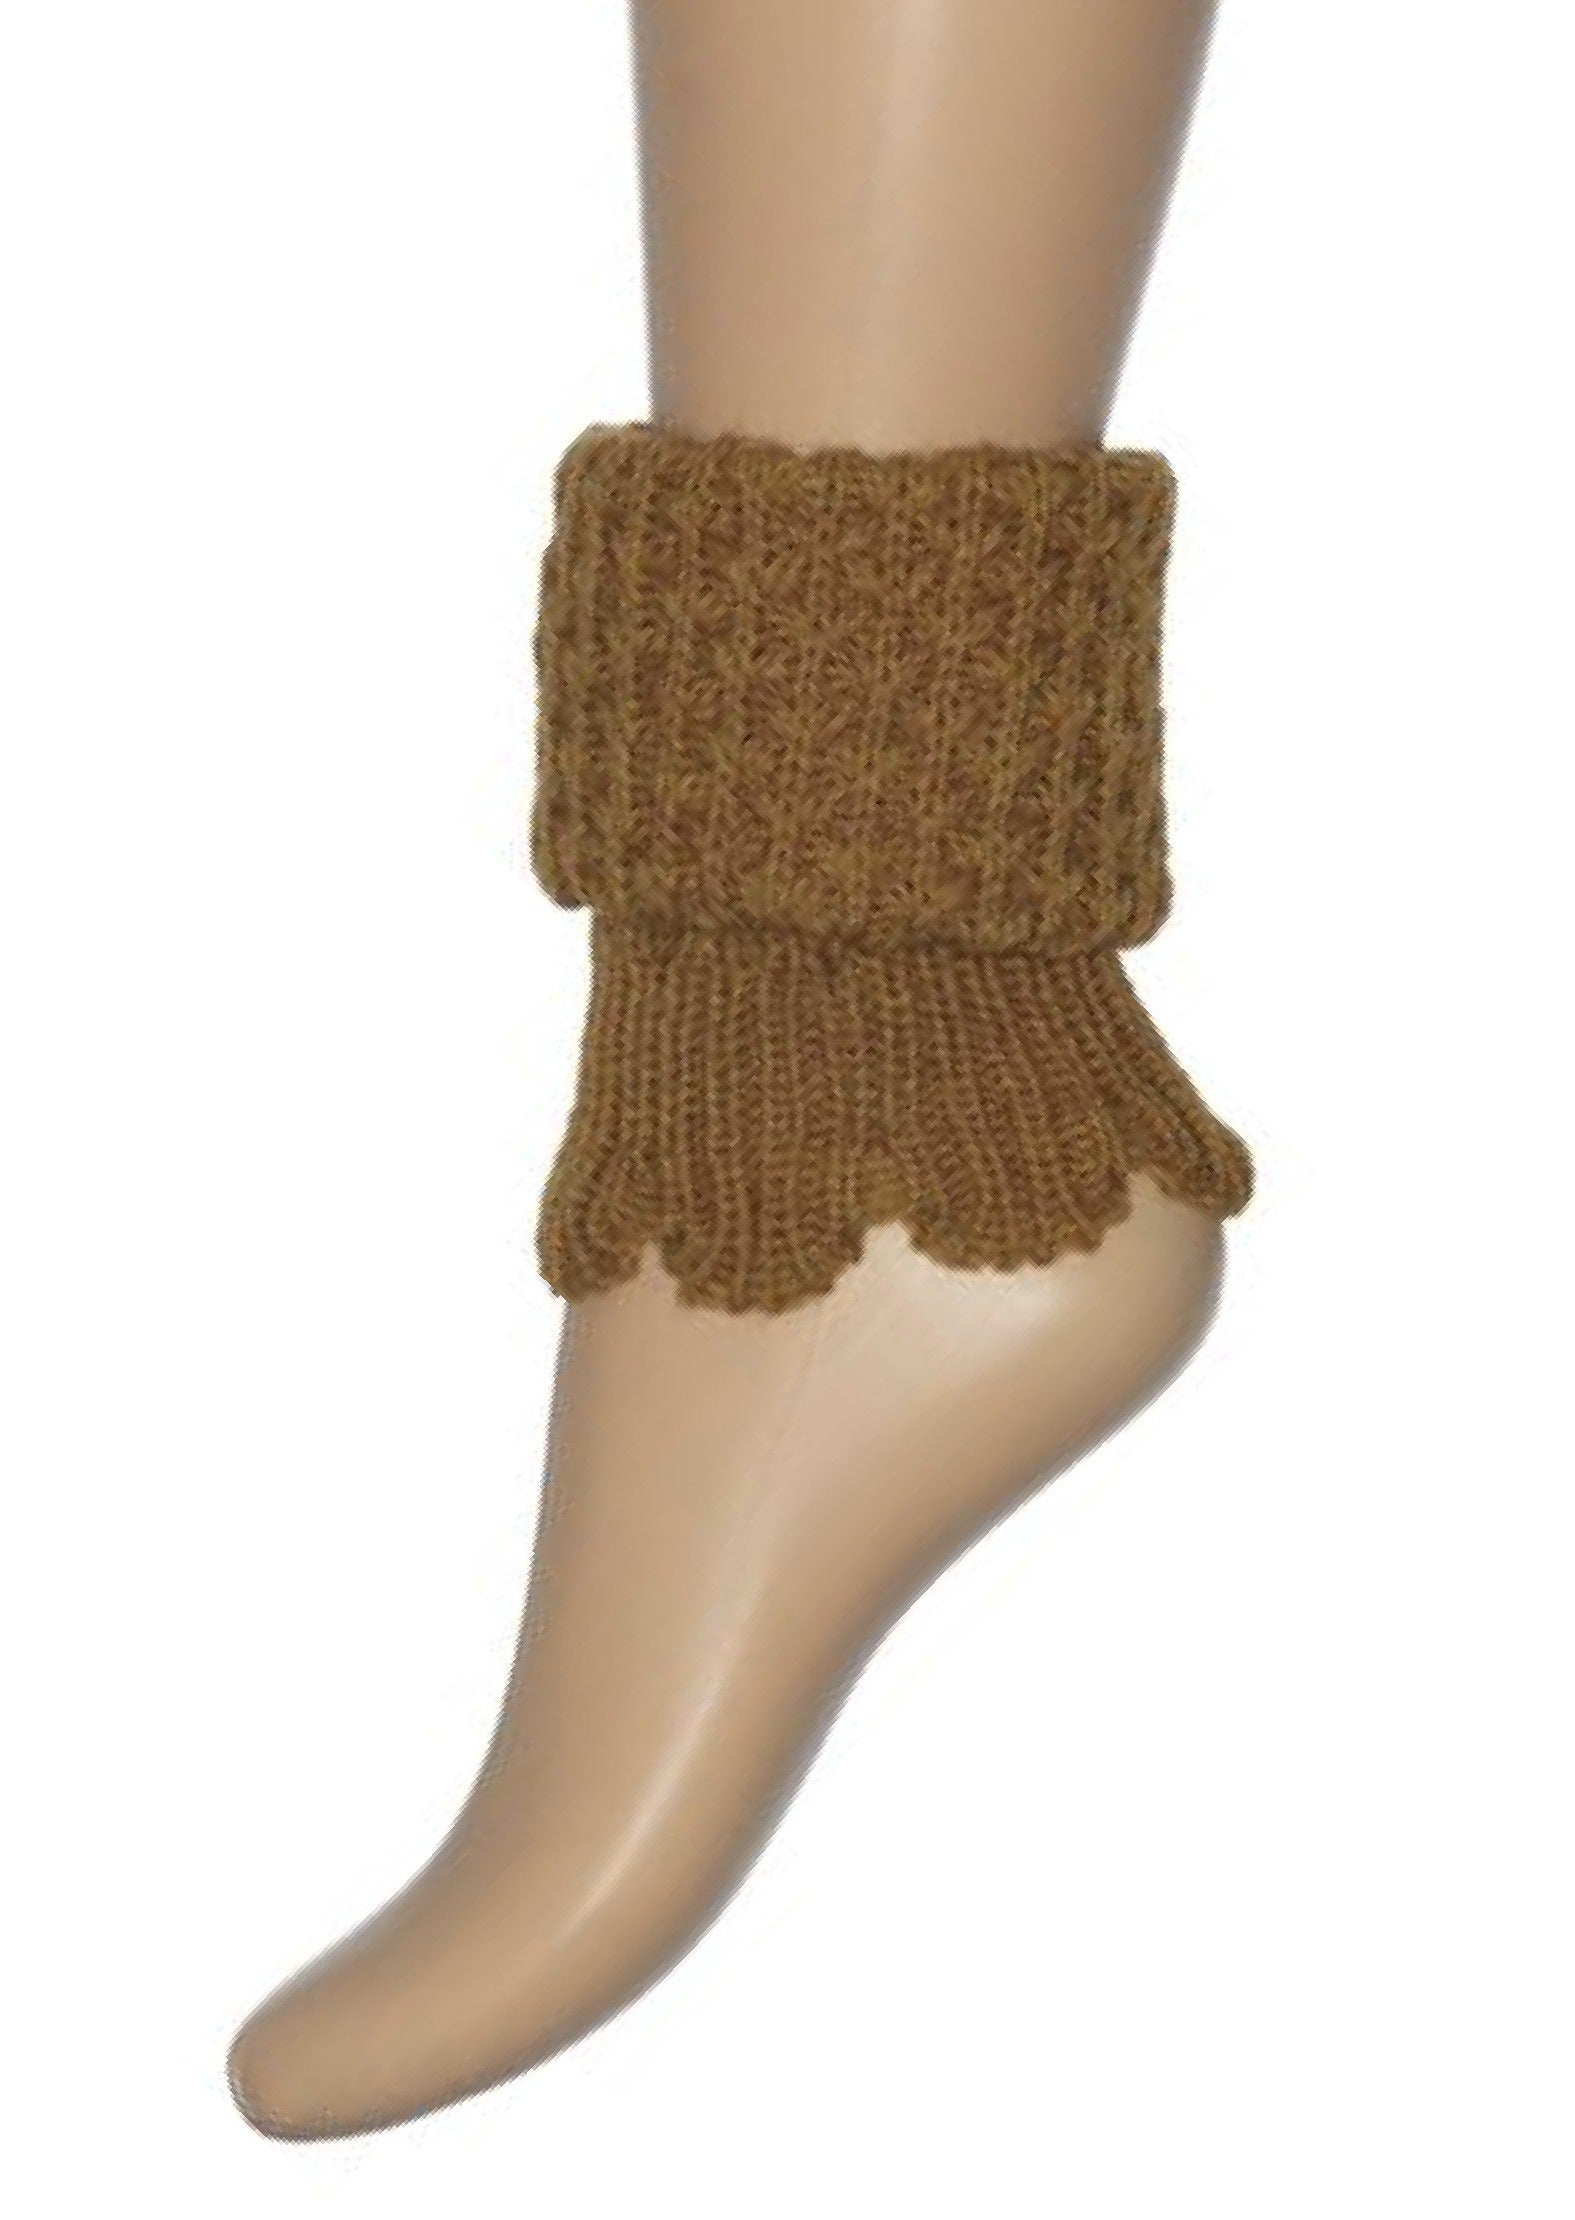 Bonnie Doon - Honeycomb Boot Top BN351789 - mustard yellow (otter) leg warmer boot cuff